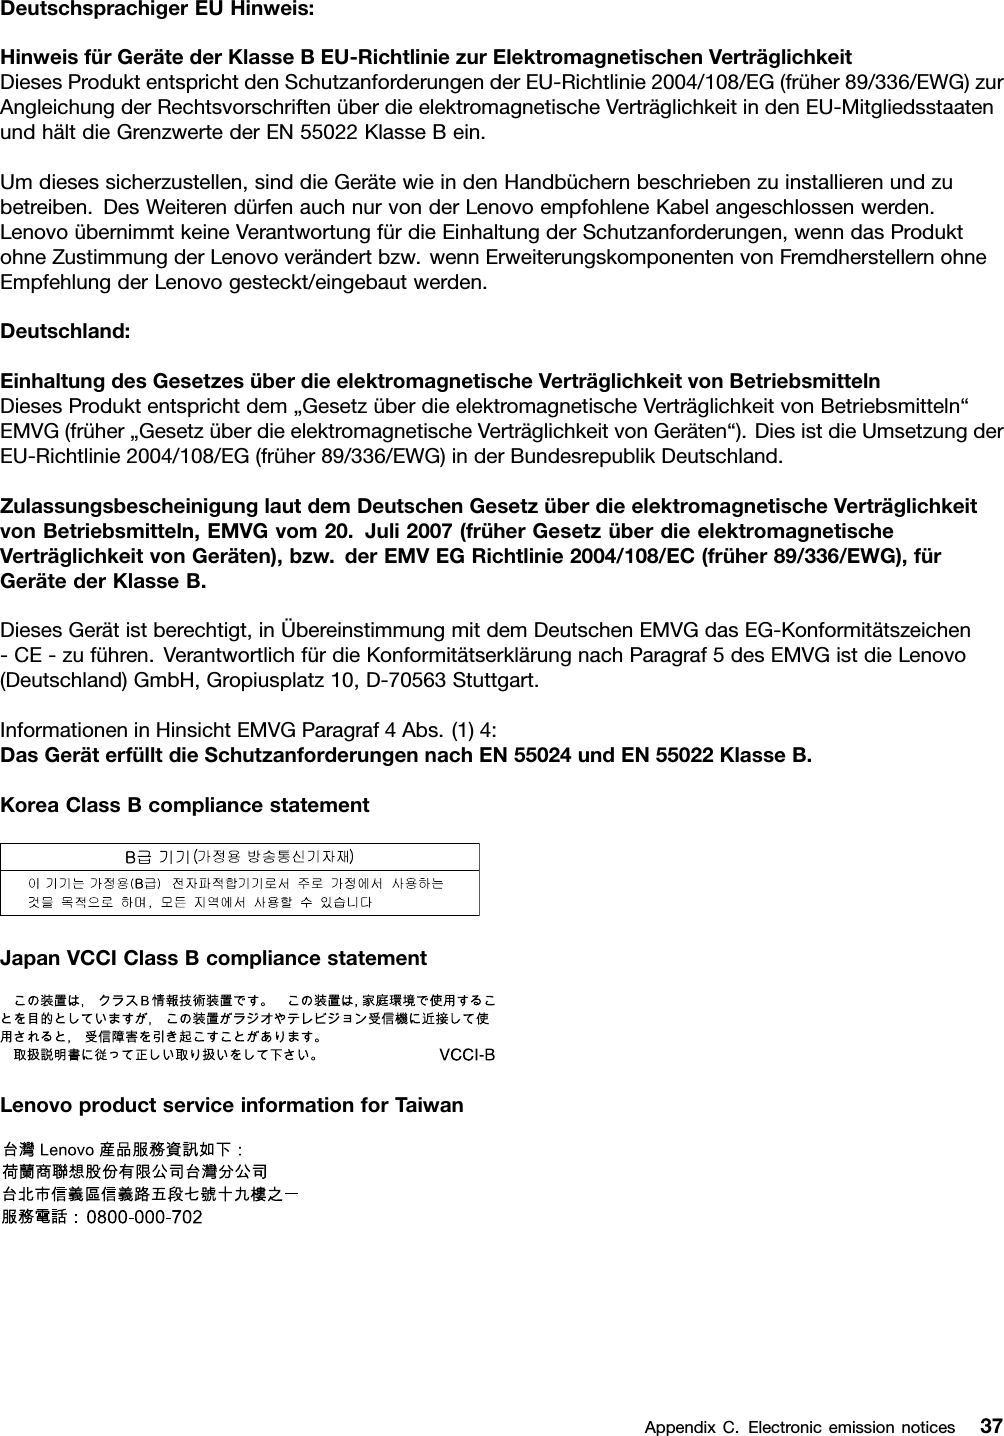 DeutschsprachigerEUHinweis:HinweisfürGerätederKlasseBEU-RichtliniezurElektromagnetischenVerträglichkeitDiesesProduktentsprichtdenSchutzanforderungenderEU-Richtlinie2004/108/EG(früher89/336/EWG)zurAngleichungderRechtsvorschriftenüberdieelektromagnetischeVerträglichkeitindenEU-MitgliedsstaatenundhältdieGrenzwertederEN55022KlasseBein.Umdiesessicherzustellen,sinddieGerätewieindenHandbüchernbeschriebenzuinstallierenundzubetreiben.DesWeiterendürfenauchnurvonderLenovoempfohleneKabelangeschlossenwerden.LenovoübernimmtkeineVerantwortungfürdieEinhaltungderSchutzanforderungen,wenndasProduktohneZustimmungderLenovoverändertbzw.wennErweiterungskomponentenvonFremdherstellernohneEmpfehlungderLenovogesteckt/eingebautwerden.Deutschland:EinhaltungdesGesetzesüberdieelektromagnetischeVerträglichkeitvonBetriebsmittelnDiesesProduktentsprichtdem„GesetzüberdieelektromagnetischeVerträglichkeitvonBetriebsmitteln“EMVG(früher„GesetzüberdieelektromagnetischeVerträglichkeitvonGeräten“).DiesistdieUmsetzungderEU-Richtlinie2004/108/EG(früher89/336/EWG)inderBundesrepublikDeutschland.ZulassungsbescheinigunglautdemDeutschenGesetzüberdieelektromagnetischeVerträglichkeitvonBetriebsmitteln,EMVGvom20.Juli2007(früherGesetzüberdieelektromagnetischeVerträglichkeitvonGeräten),bzw.derEMVEGRichtlinie2004/108/EC(früher89/336/EWG),fürGerätederKlasseB.DiesesGerätistberechtigt,inÜbereinstimmungmitdemDeutschenEMVGdasEG-Konformitätszeichen-CE-zuführen.VerantwortlichfürdieKonformitätserklärungnachParagraf5desEMVGistdieLenovo(Deutschland)GmbH,Gropiusplatz10,D-70563Stuttgart.InformationeninHinsichtEMVGParagraf4Abs.(1)4:DasGeräterfülltdieSchutzanforderungennachEN55024undEN55022KlasseB.KoreaClassBcompliancestatementJapanVCCIClassBcompliancestatementLenovoproductserviceinformationforTaiwanAppendixC.Electronicemissionnotices37